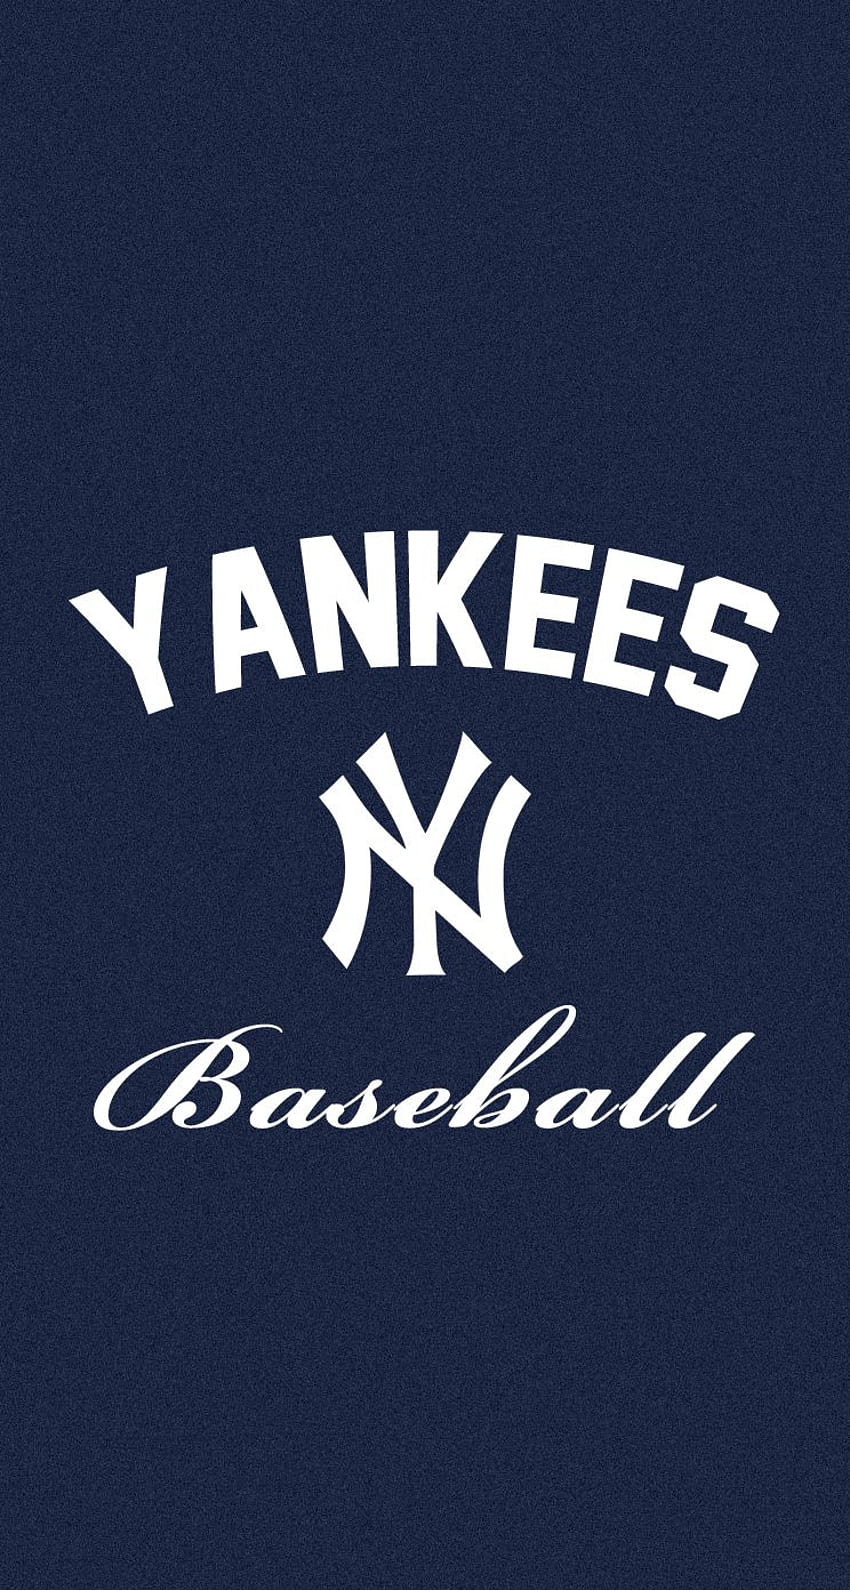 10 Latest New York Yankees Desktop Wallpaper FULL HD 1080p For PC  Background